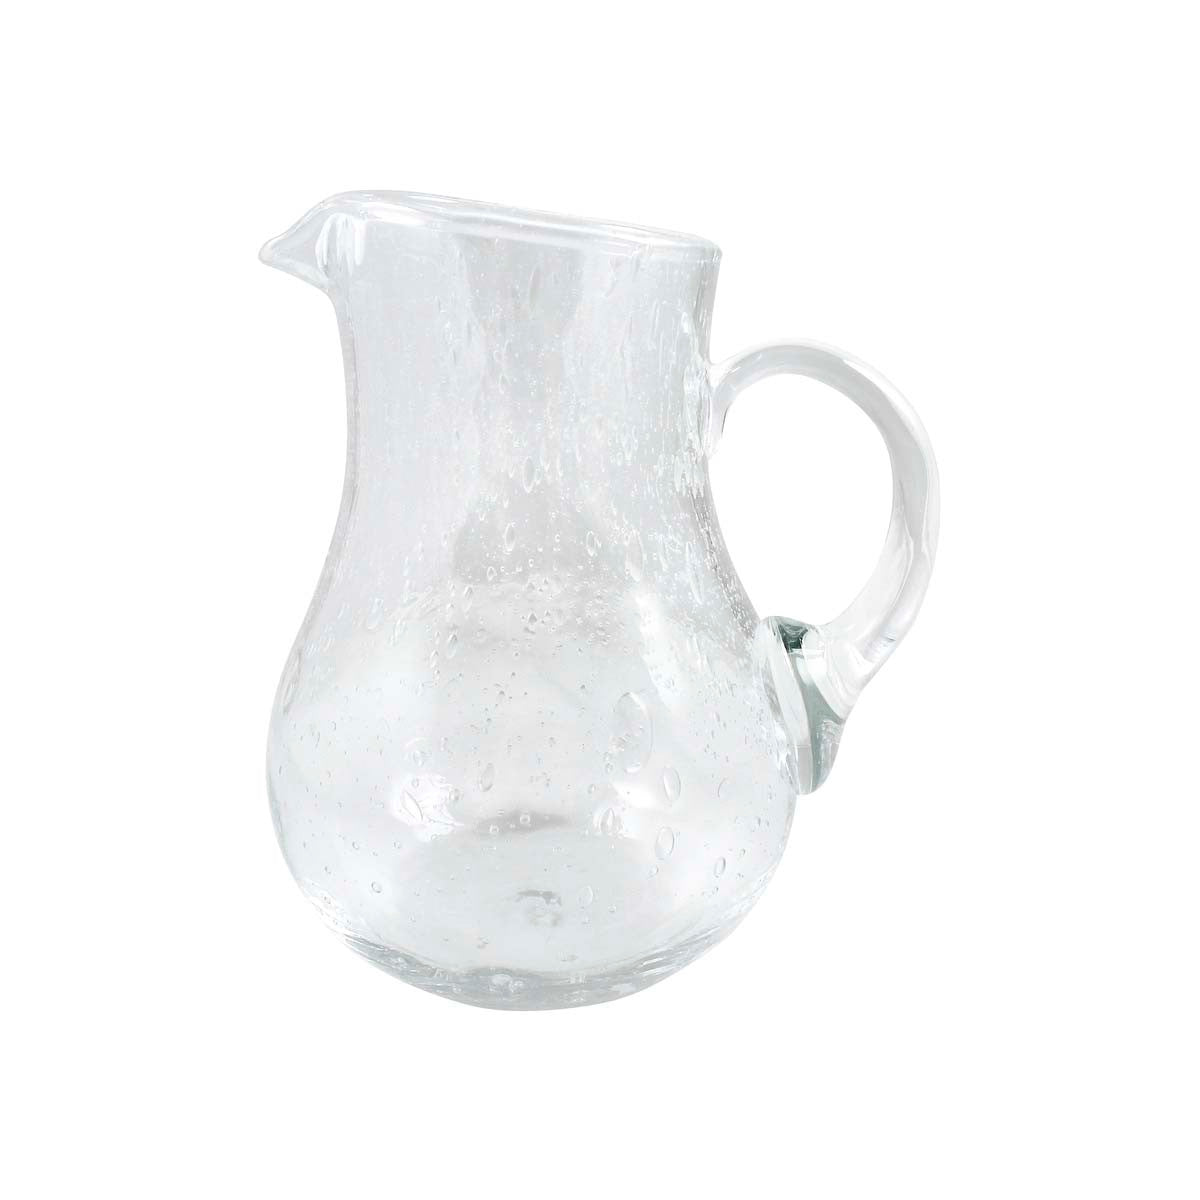 Mariposa Bellini Small Glass Pitcher